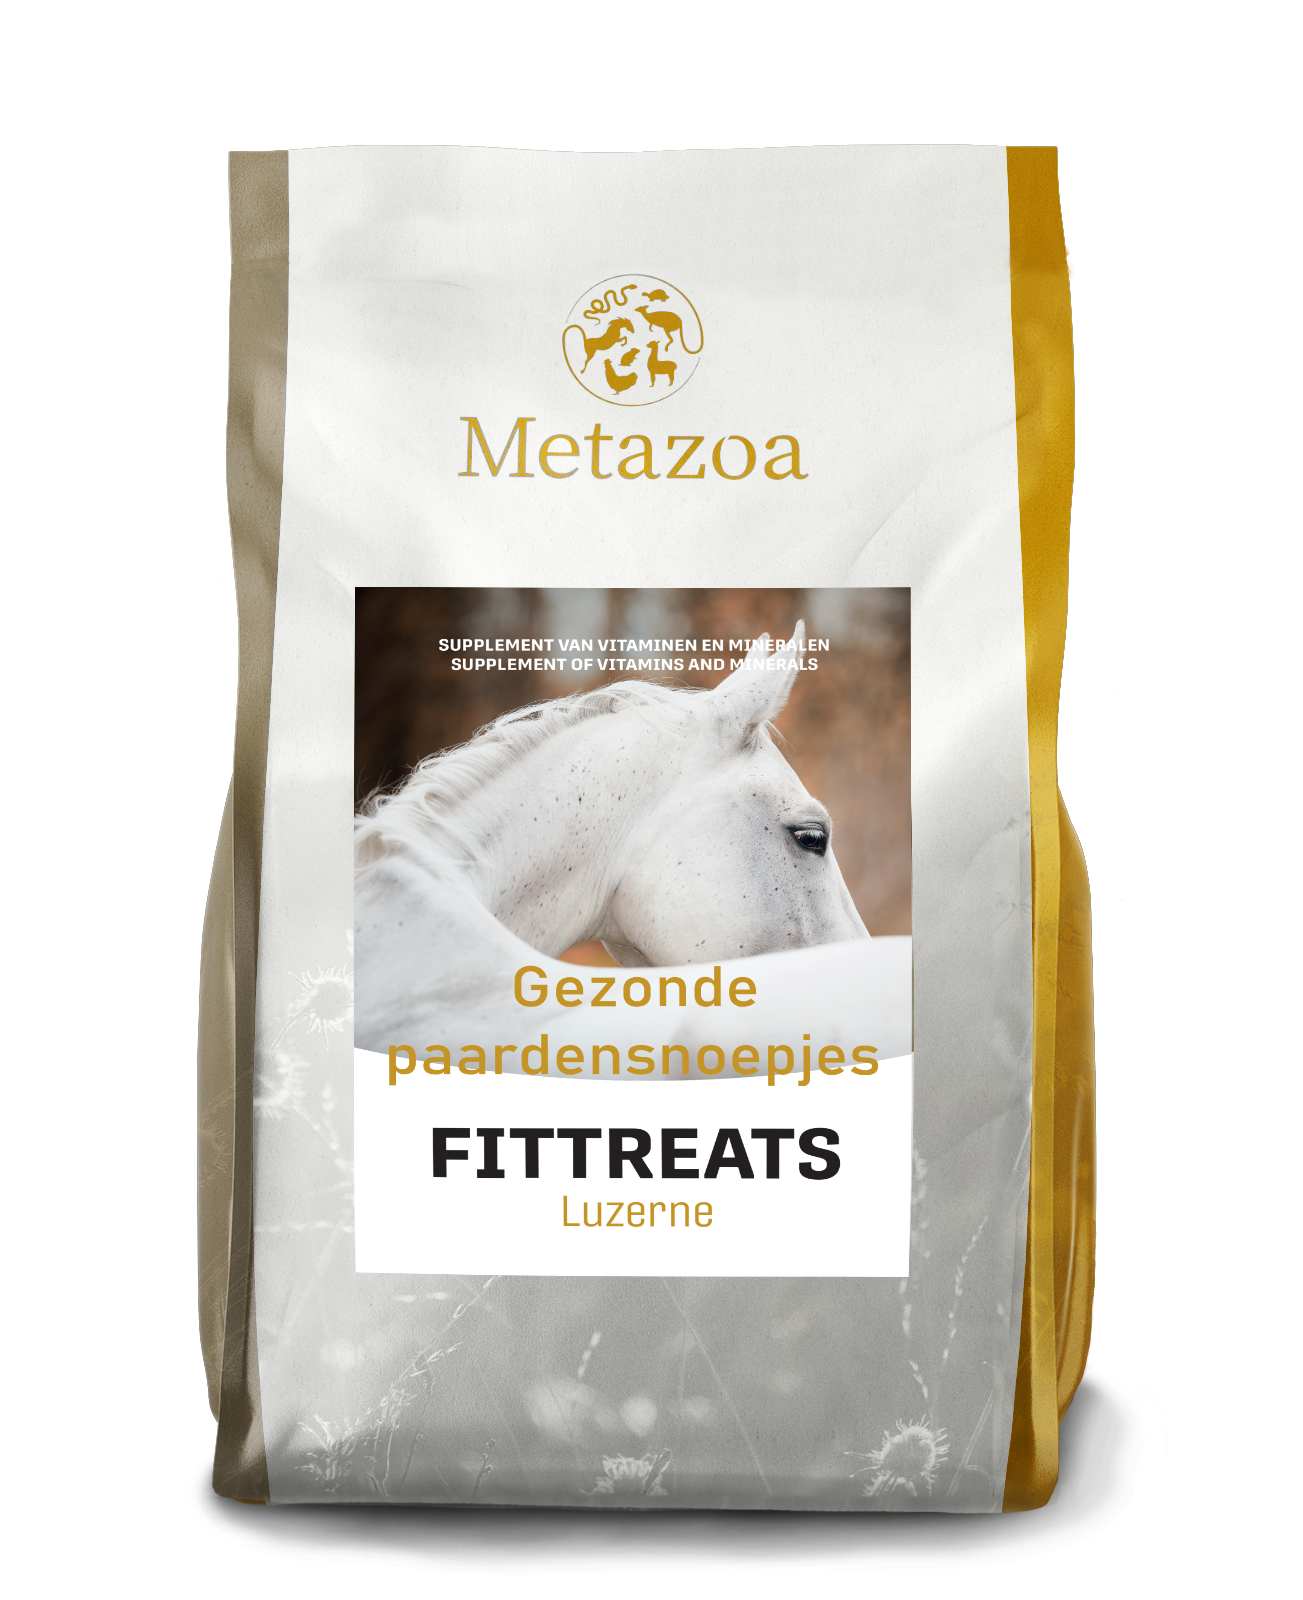 Download Metazoa FitTreats luzerne verpakking 4kg EAN 4260176357193